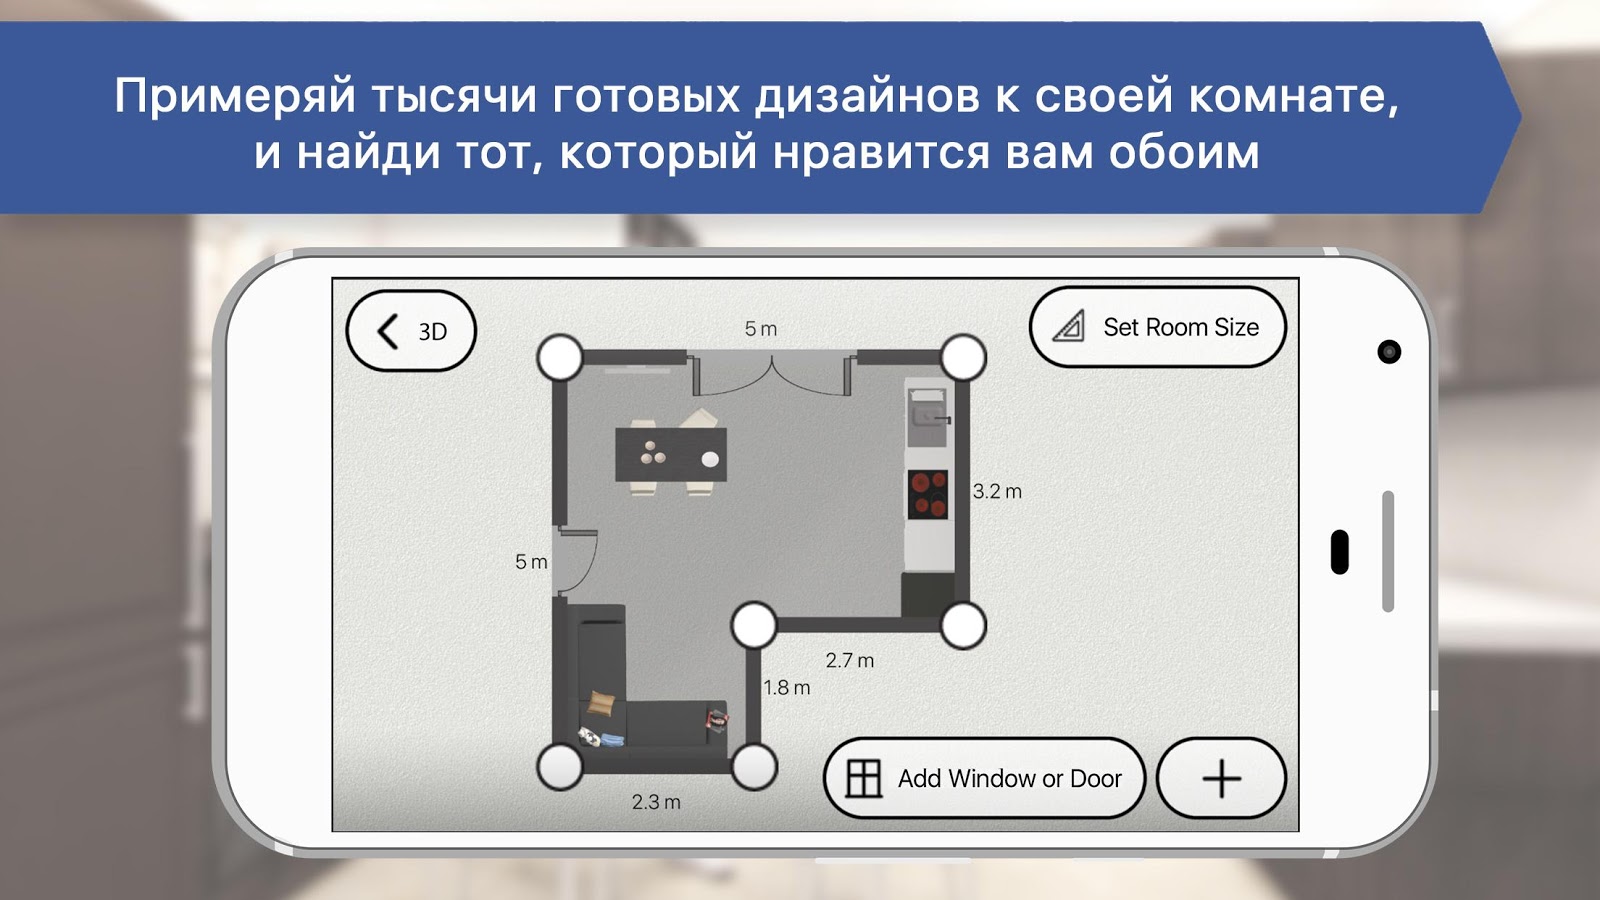 3D Кухни для ИКЕА: планировщик интерьера комнаты — приложение на Android